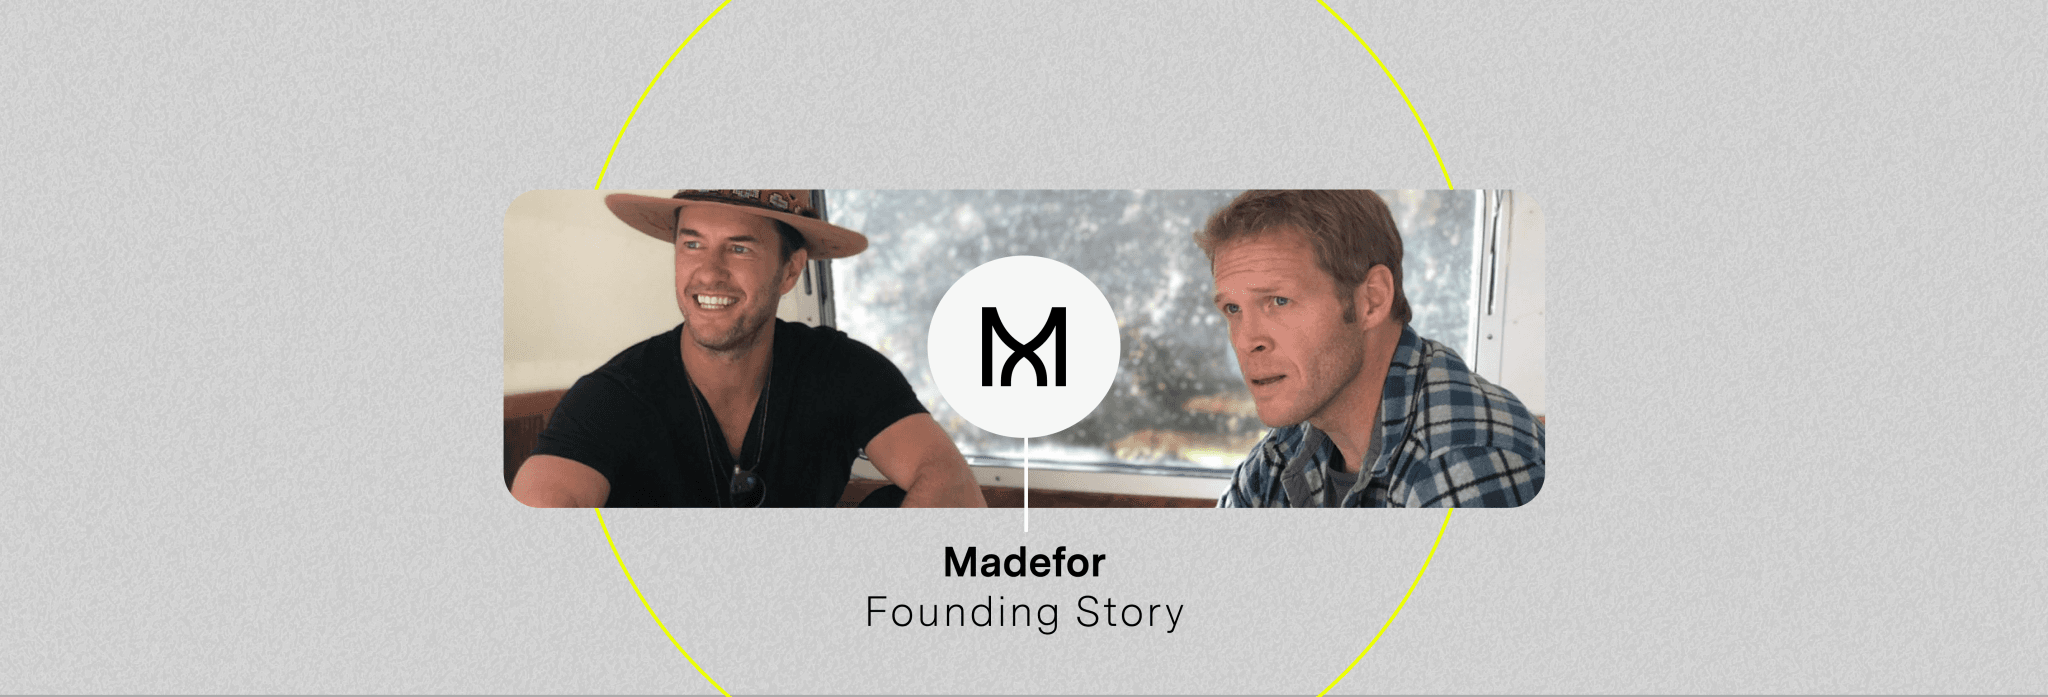 Madefor Founding Story | Madefor